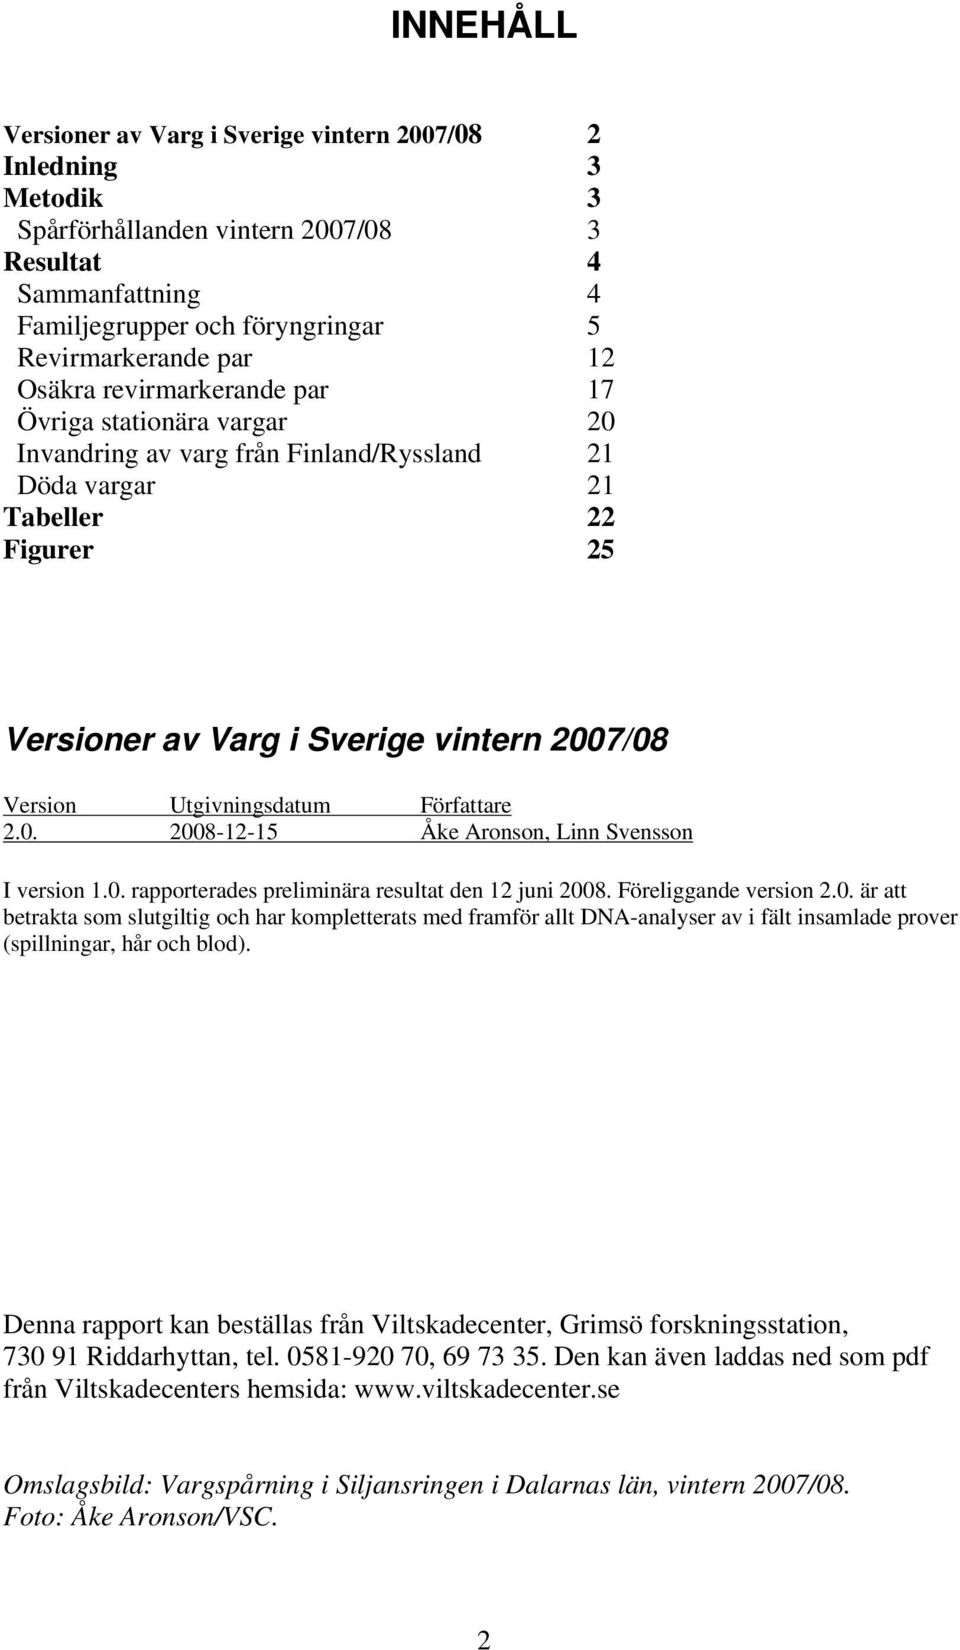 Utgivningsdatum Författare 2.0. 2008-12-15 Åke Aronson, Linn Svensson I version 1.0. rapporterades preliminära resultat den 12 juni 2008. Föreliggande version 2.0. är att betrakta som slutgiltig och har kompletterats med framför allt DNA-analyser av i fält insamlade prover (spillningar, hår och blod).